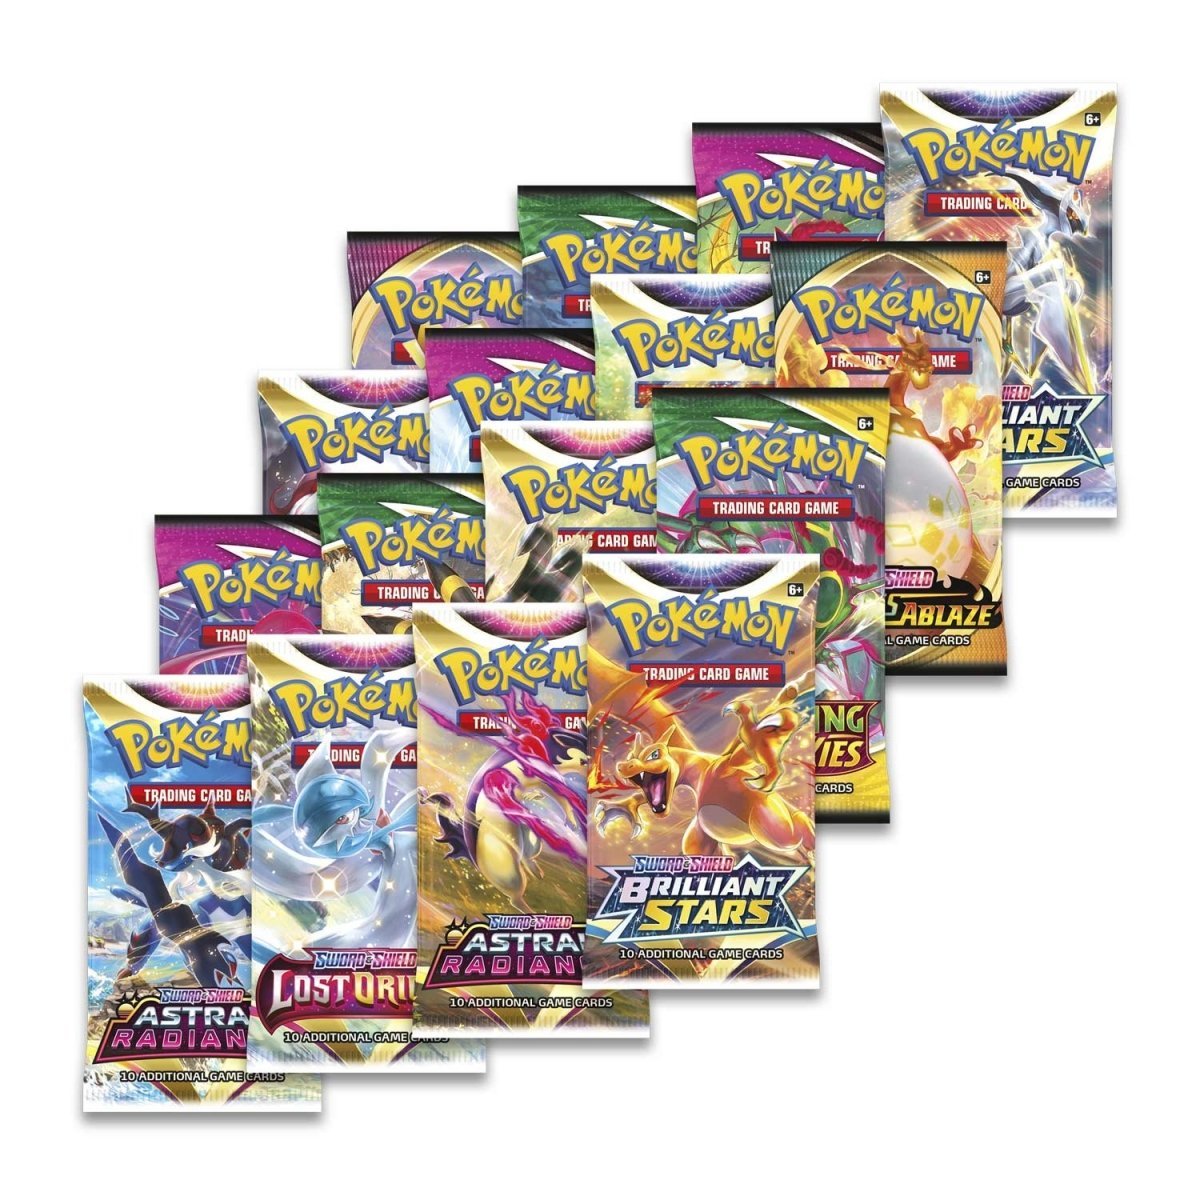 Pokémon TCG: Sword & Shield Charizard Ultra Premium Collection - PokeRvmCollection Box